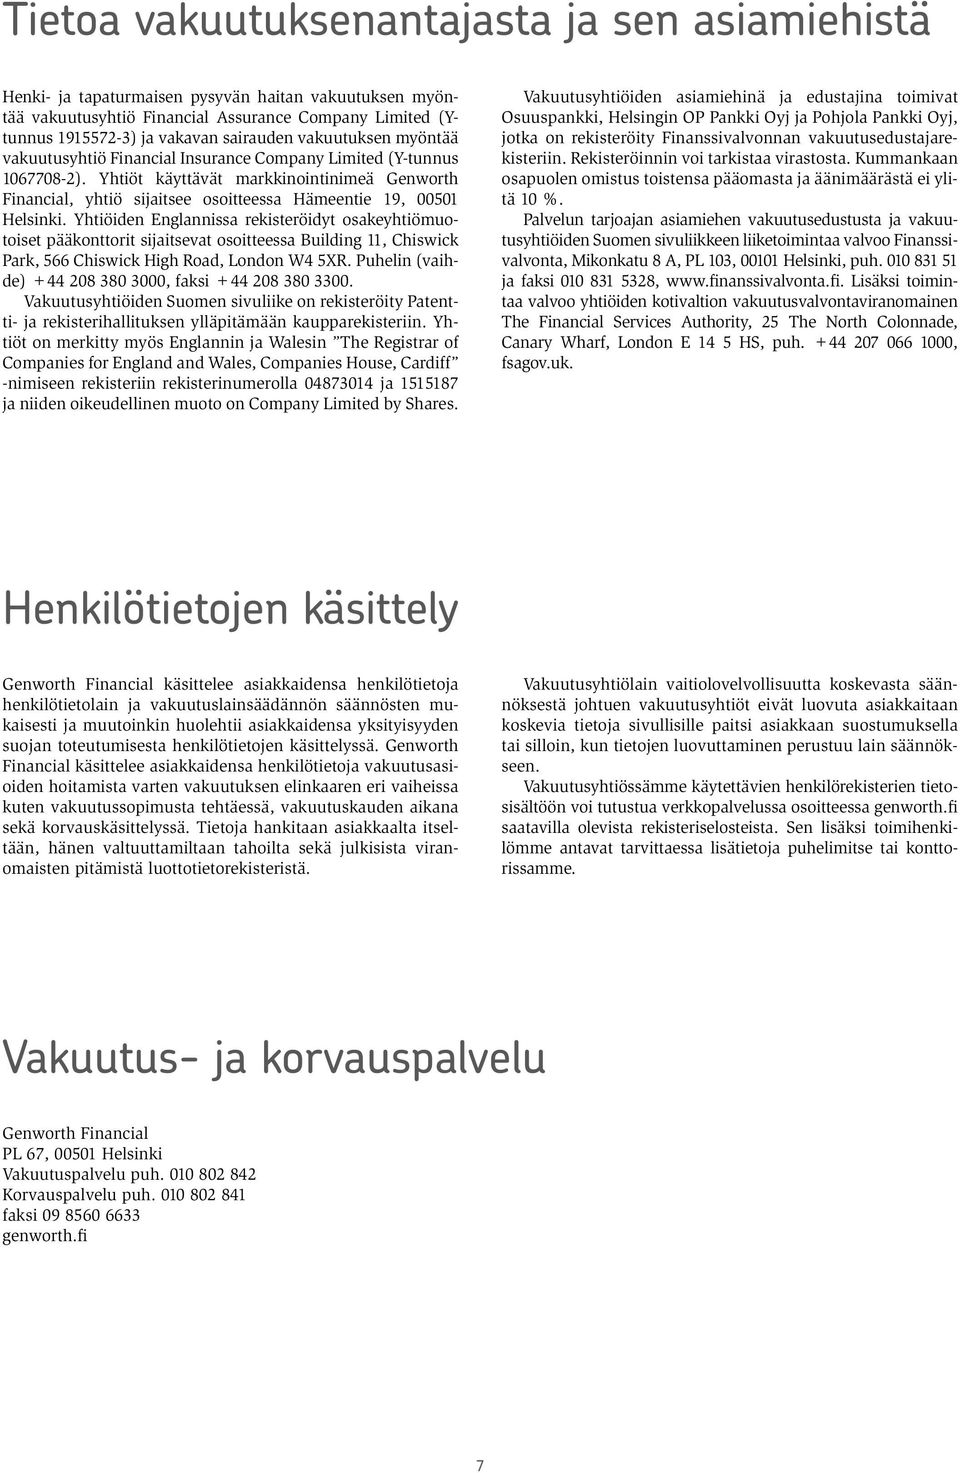 Yhtiöt käyttävät markkinointinimeä Genworth Financial, yhtiö sijaitsee osoitteessa Hämeentie 19, 00501 Helsinki.